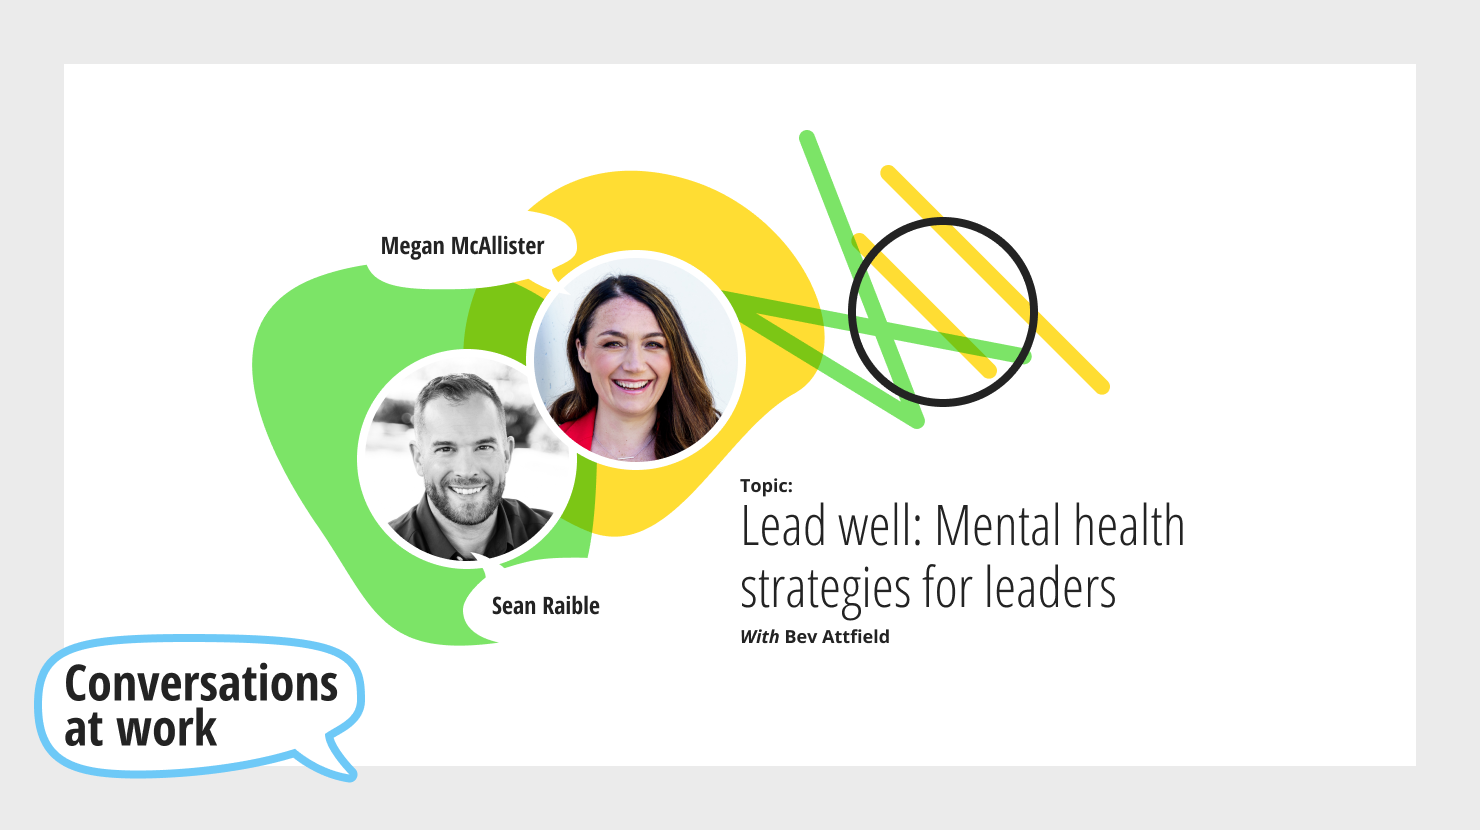 Lead well: Mental health strategies for leaders